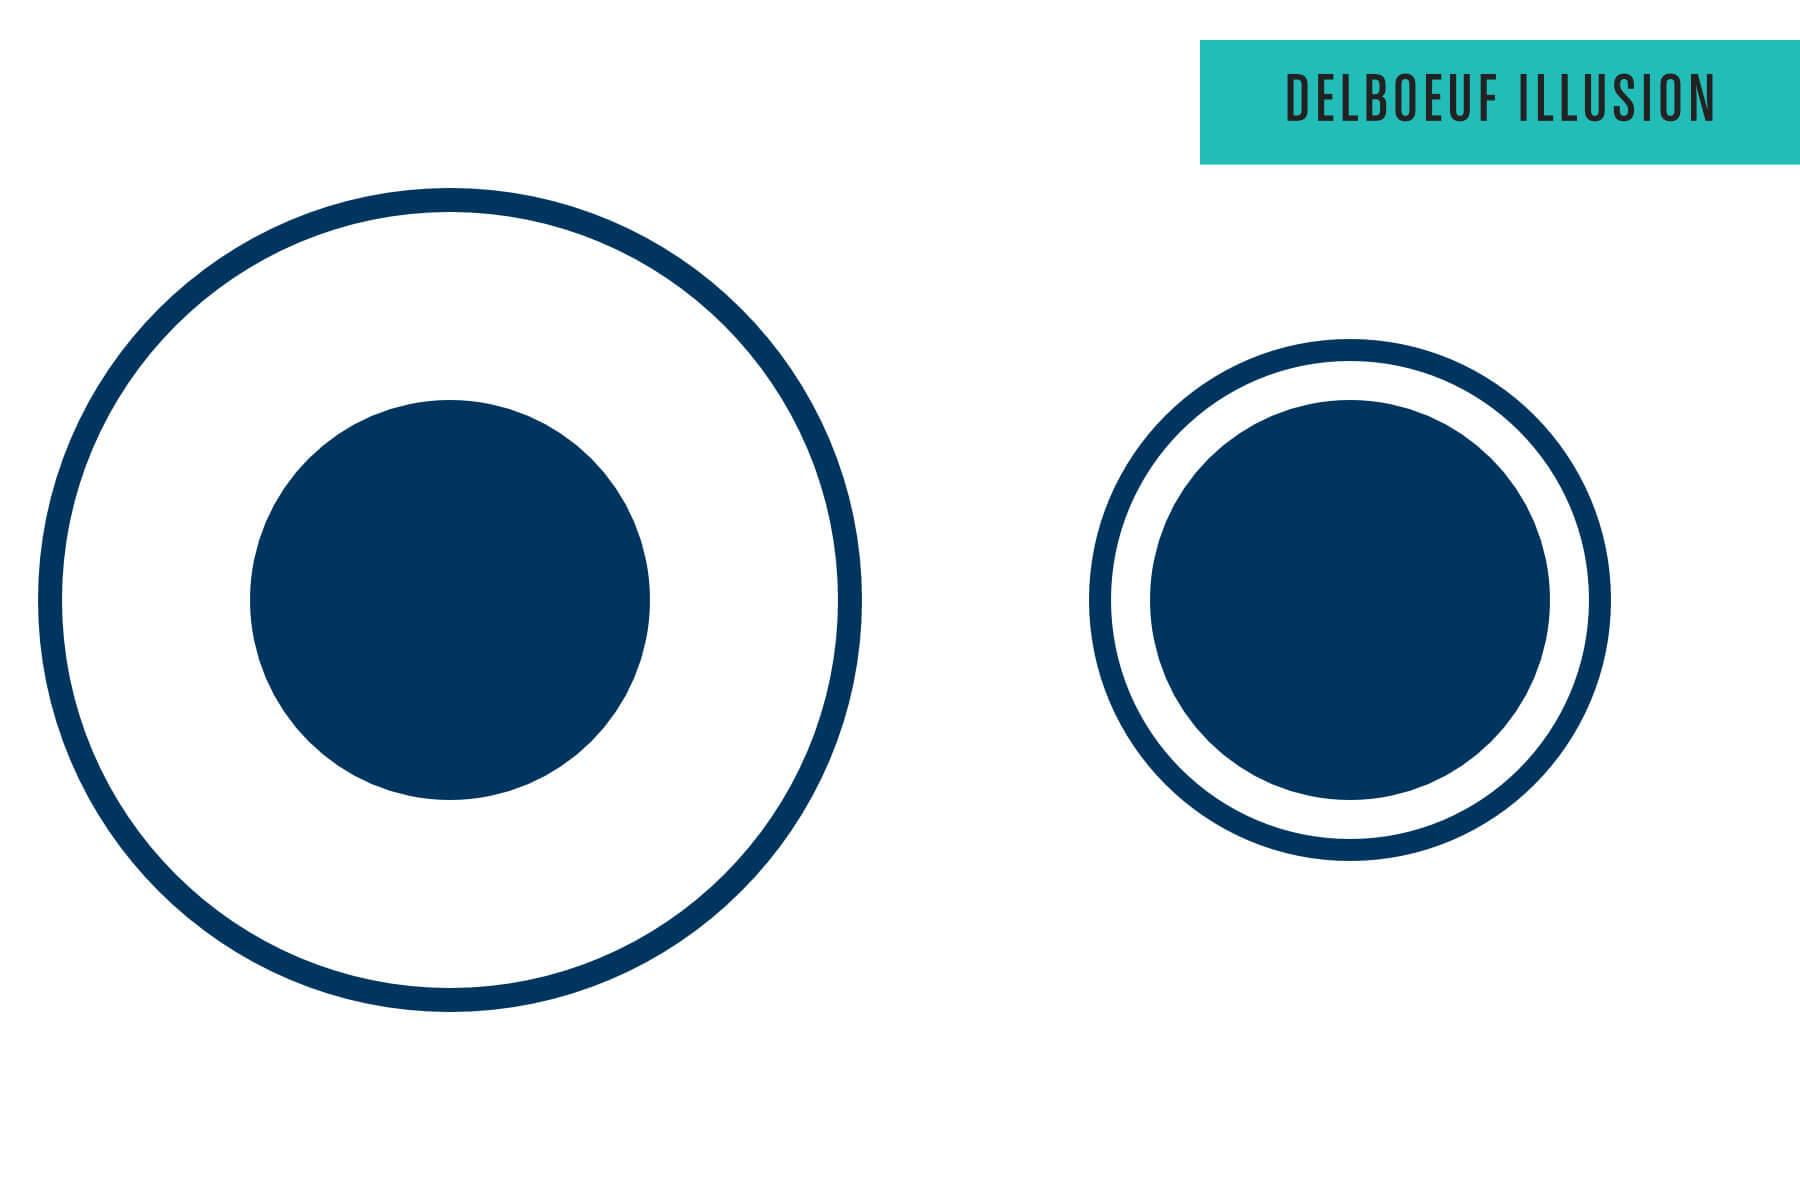 Delboeuf Illusion: der linke Kreis wirkt kleiner als der rechte, hat aber dieselbe Groesse